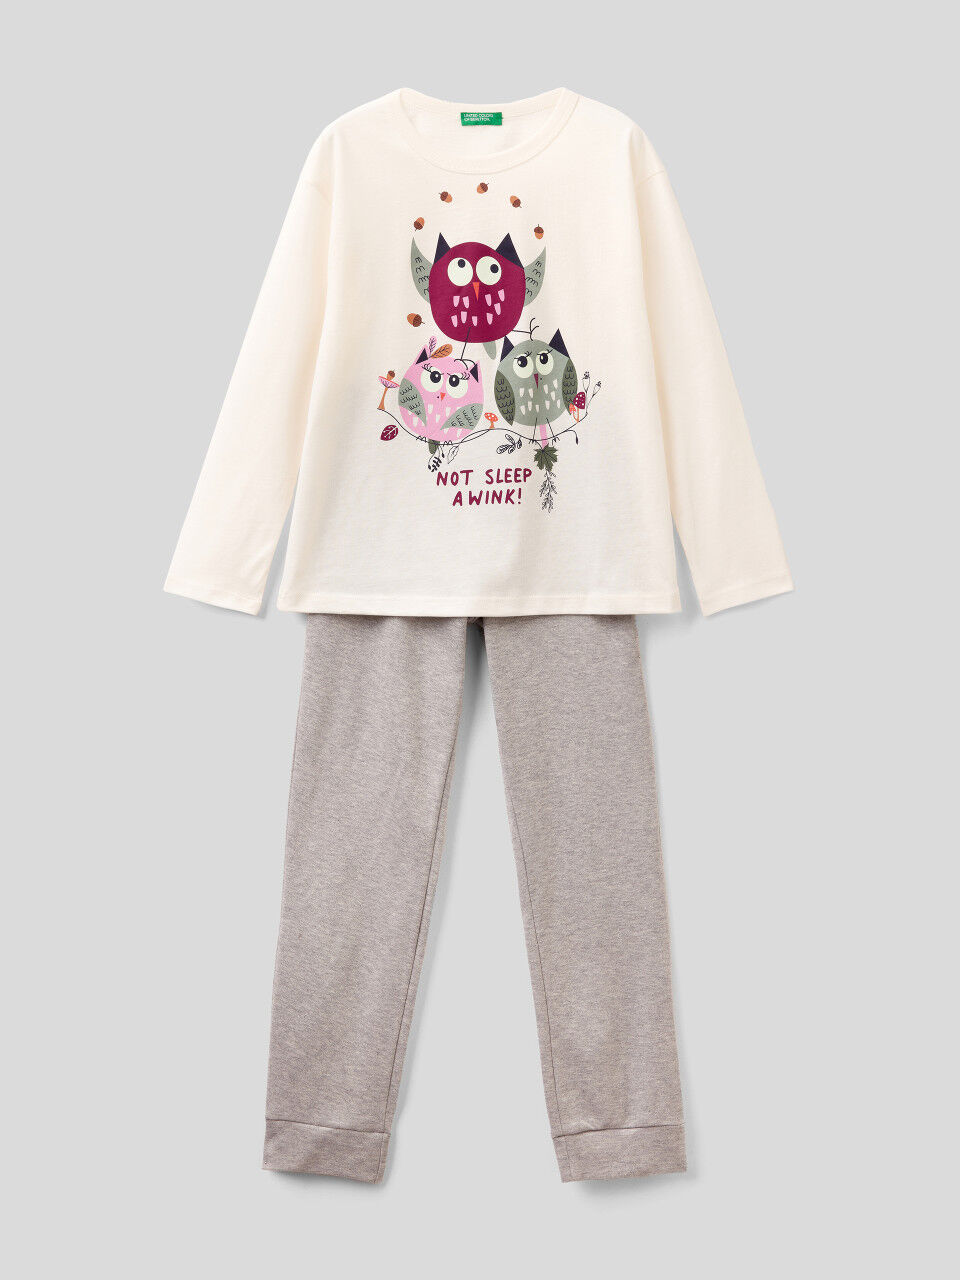 Benetton Girls Pink Pyjamas PJ's Set Kitten Print Cotton NEW Ex Benetton Age 2-12 Years 